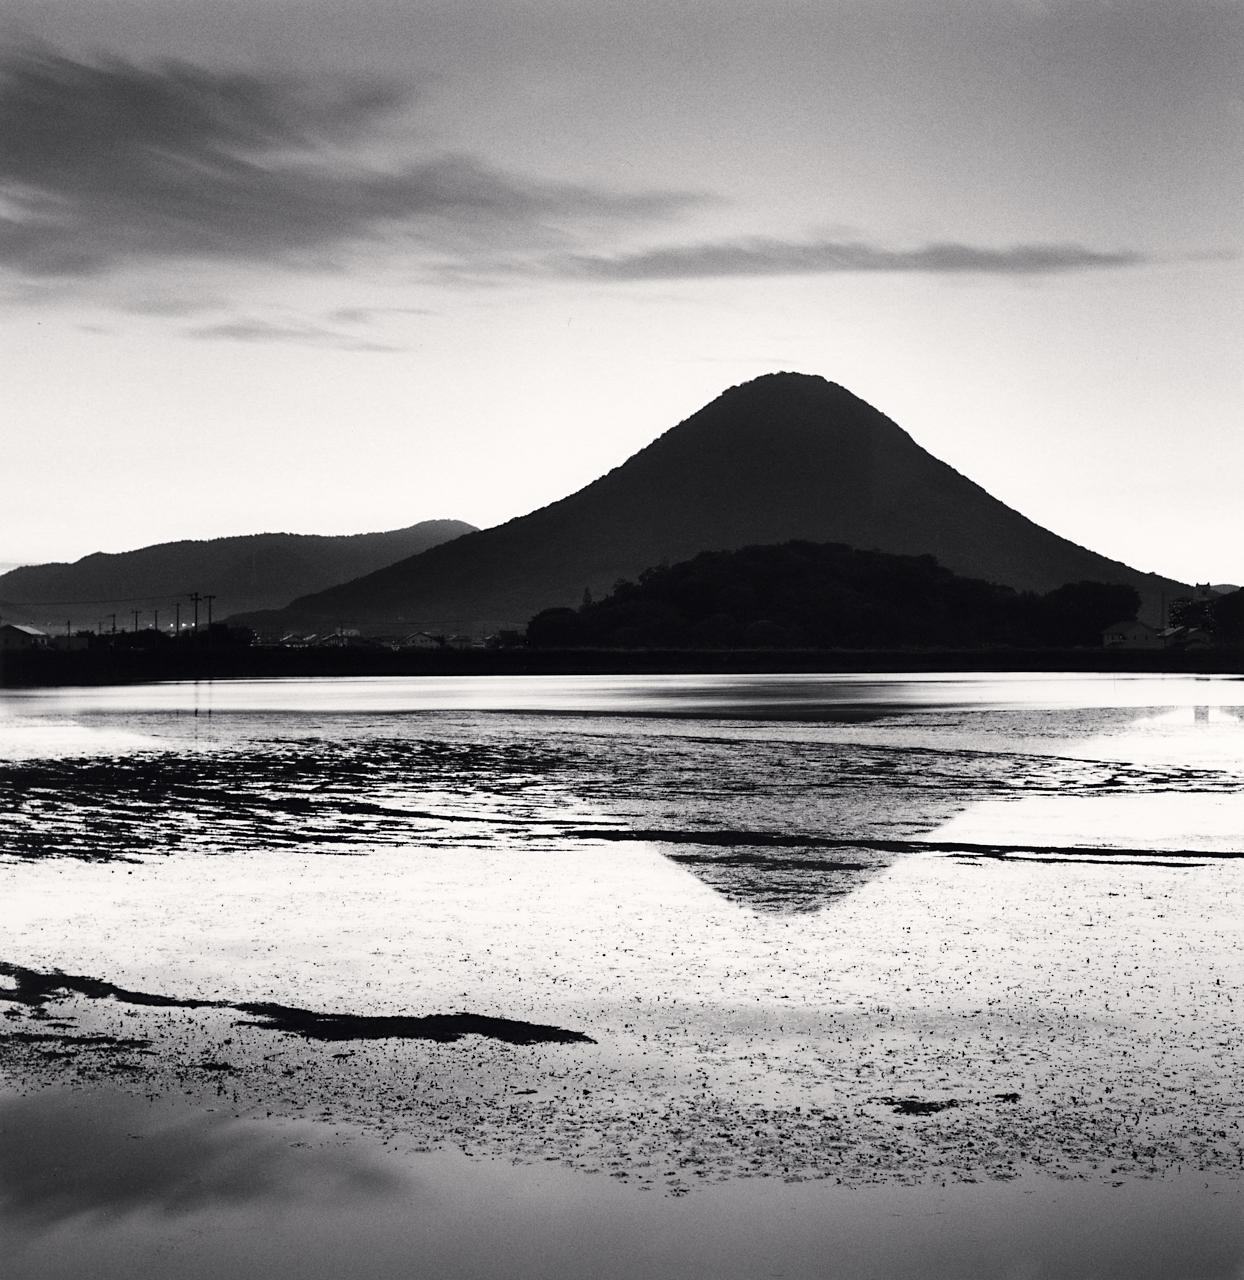 Michael Kenna Landscape Photograph - Sanuki Fuji, Kagawa, Shikoku, Japan, limited edition photograph 